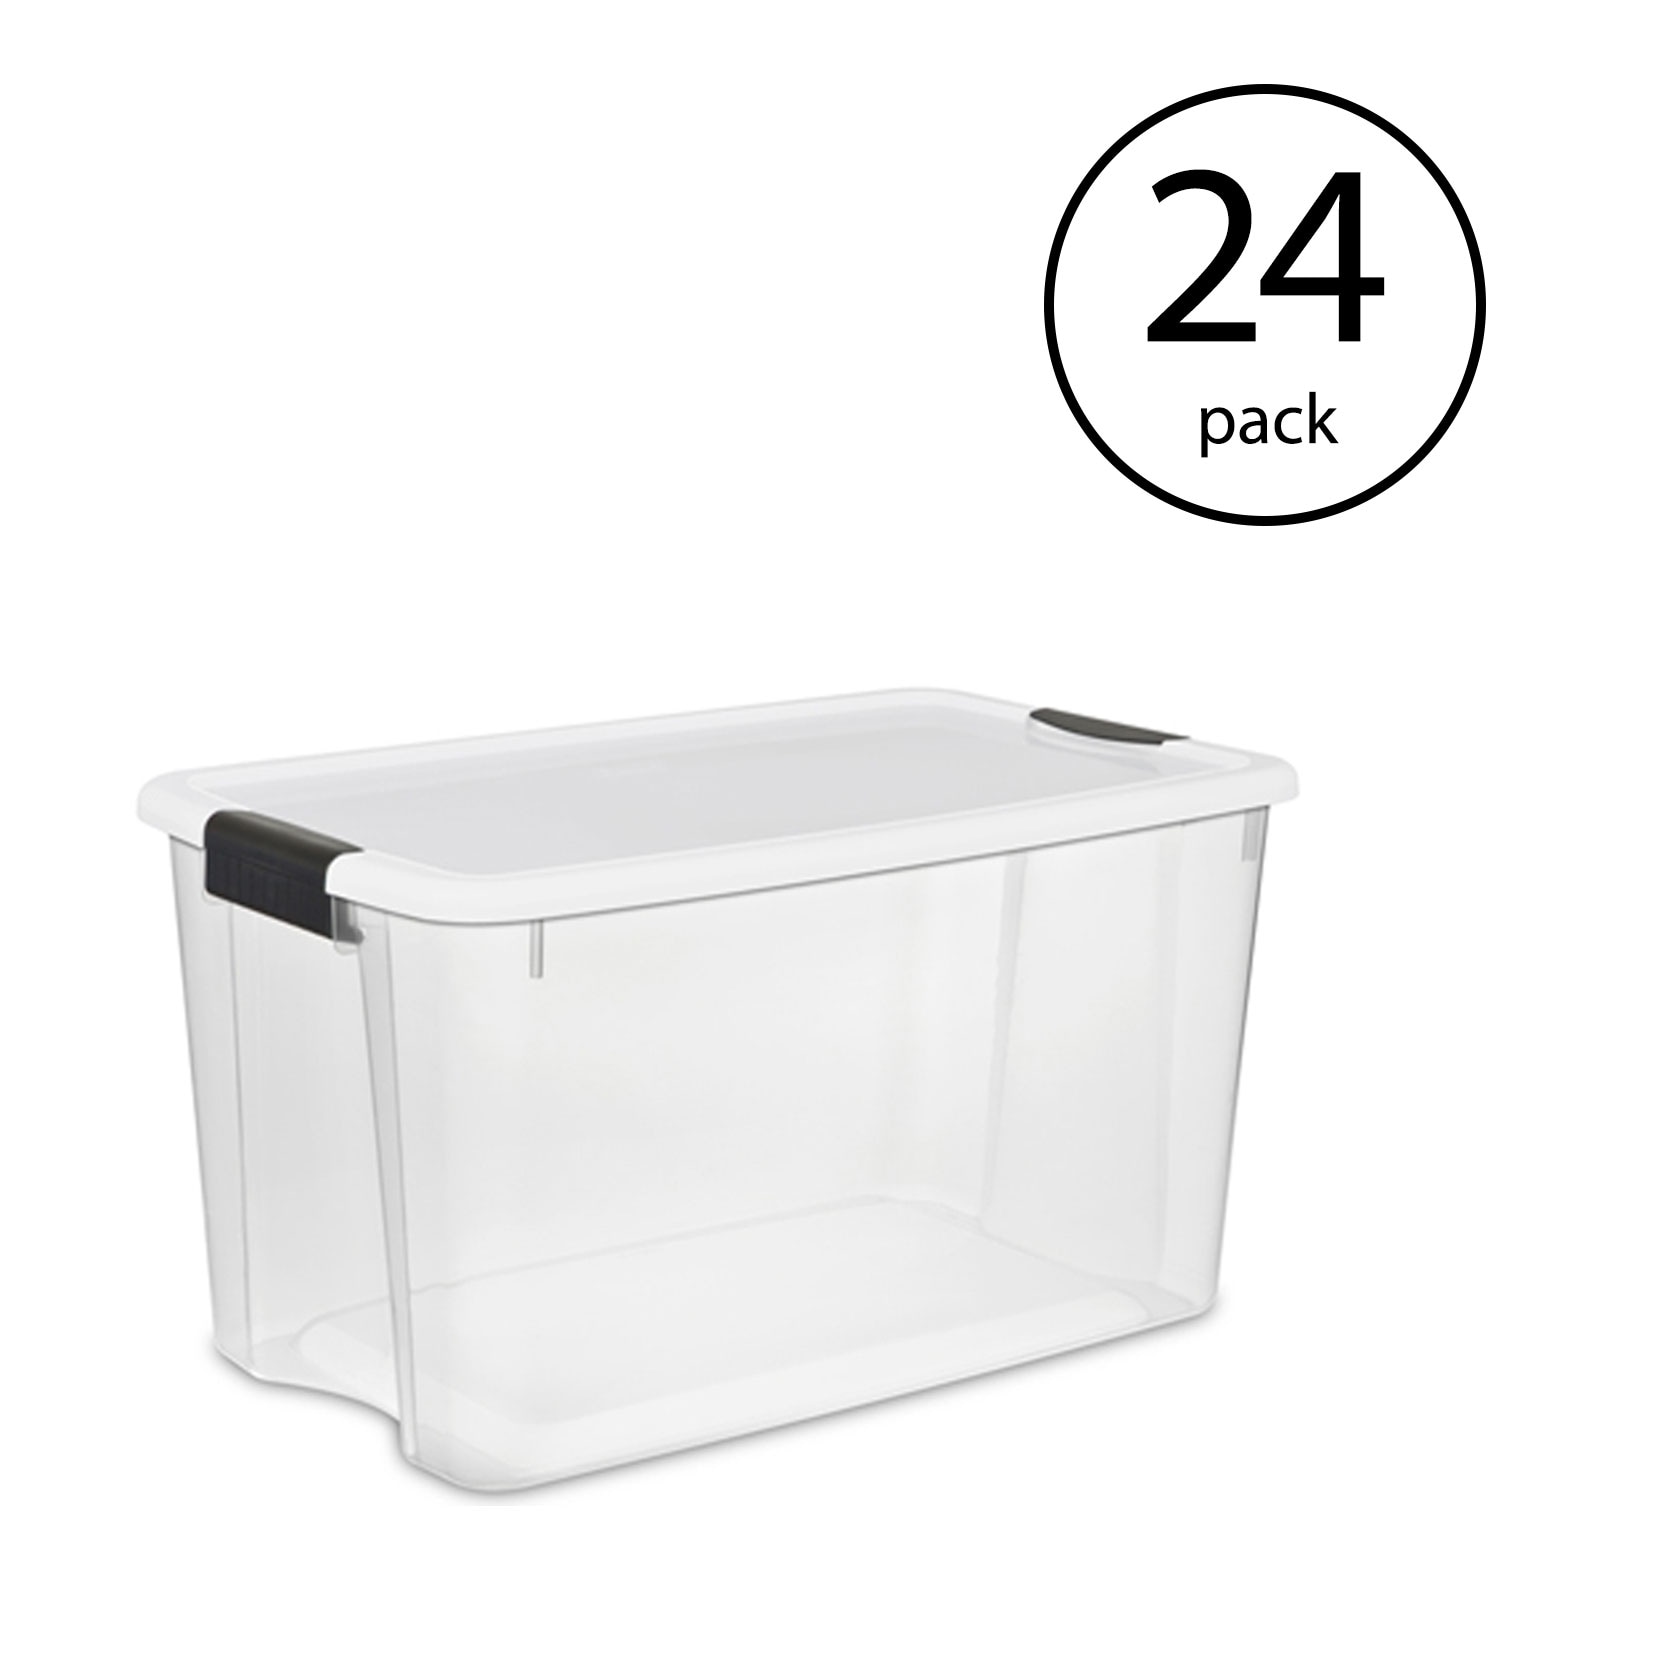 Superio Storage Container (42 quart)